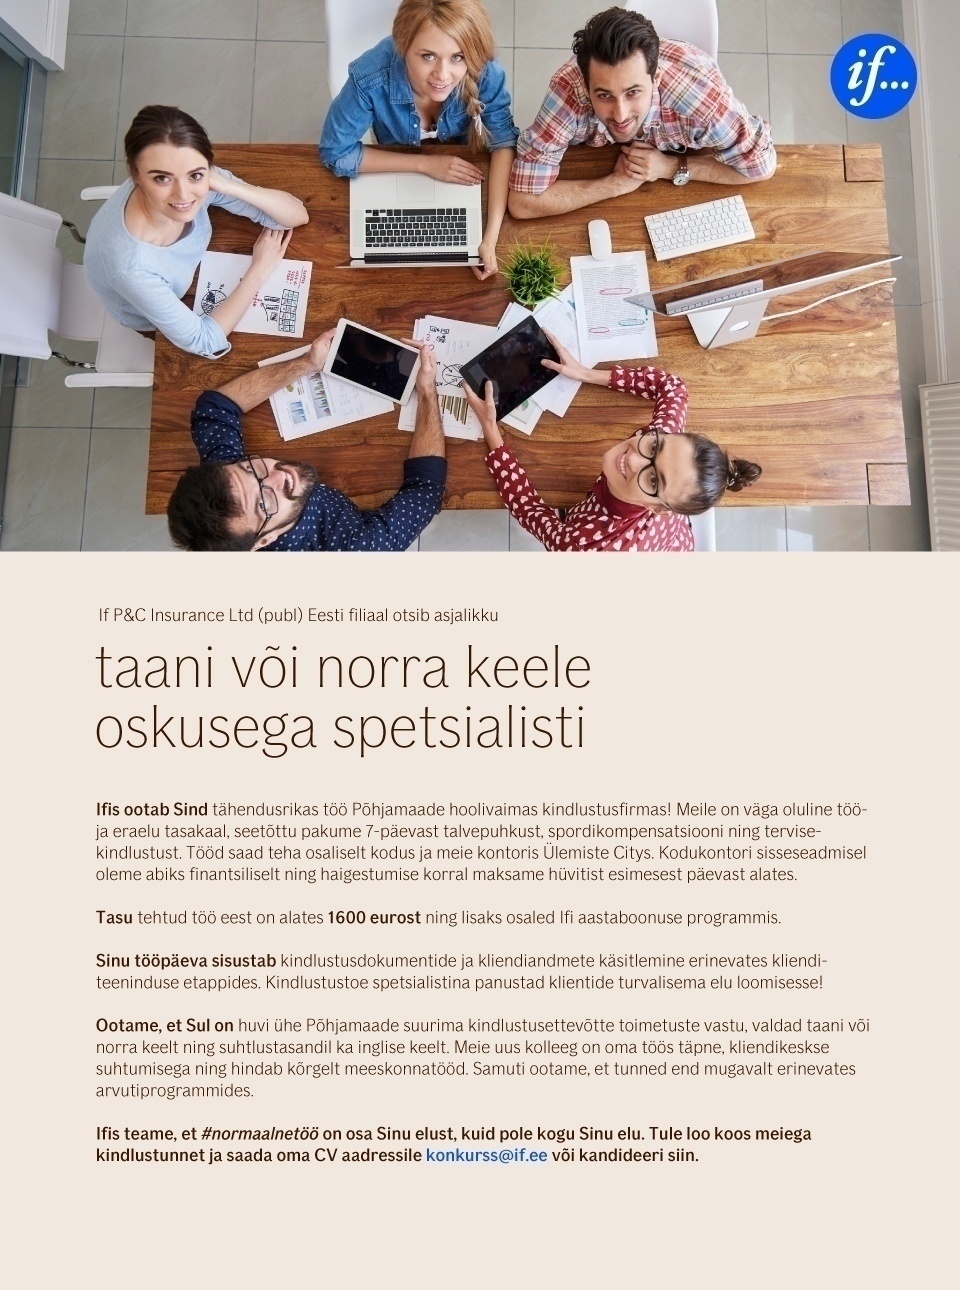 If P&C Insurance AS Taani või norra keele oskusega spetsialist